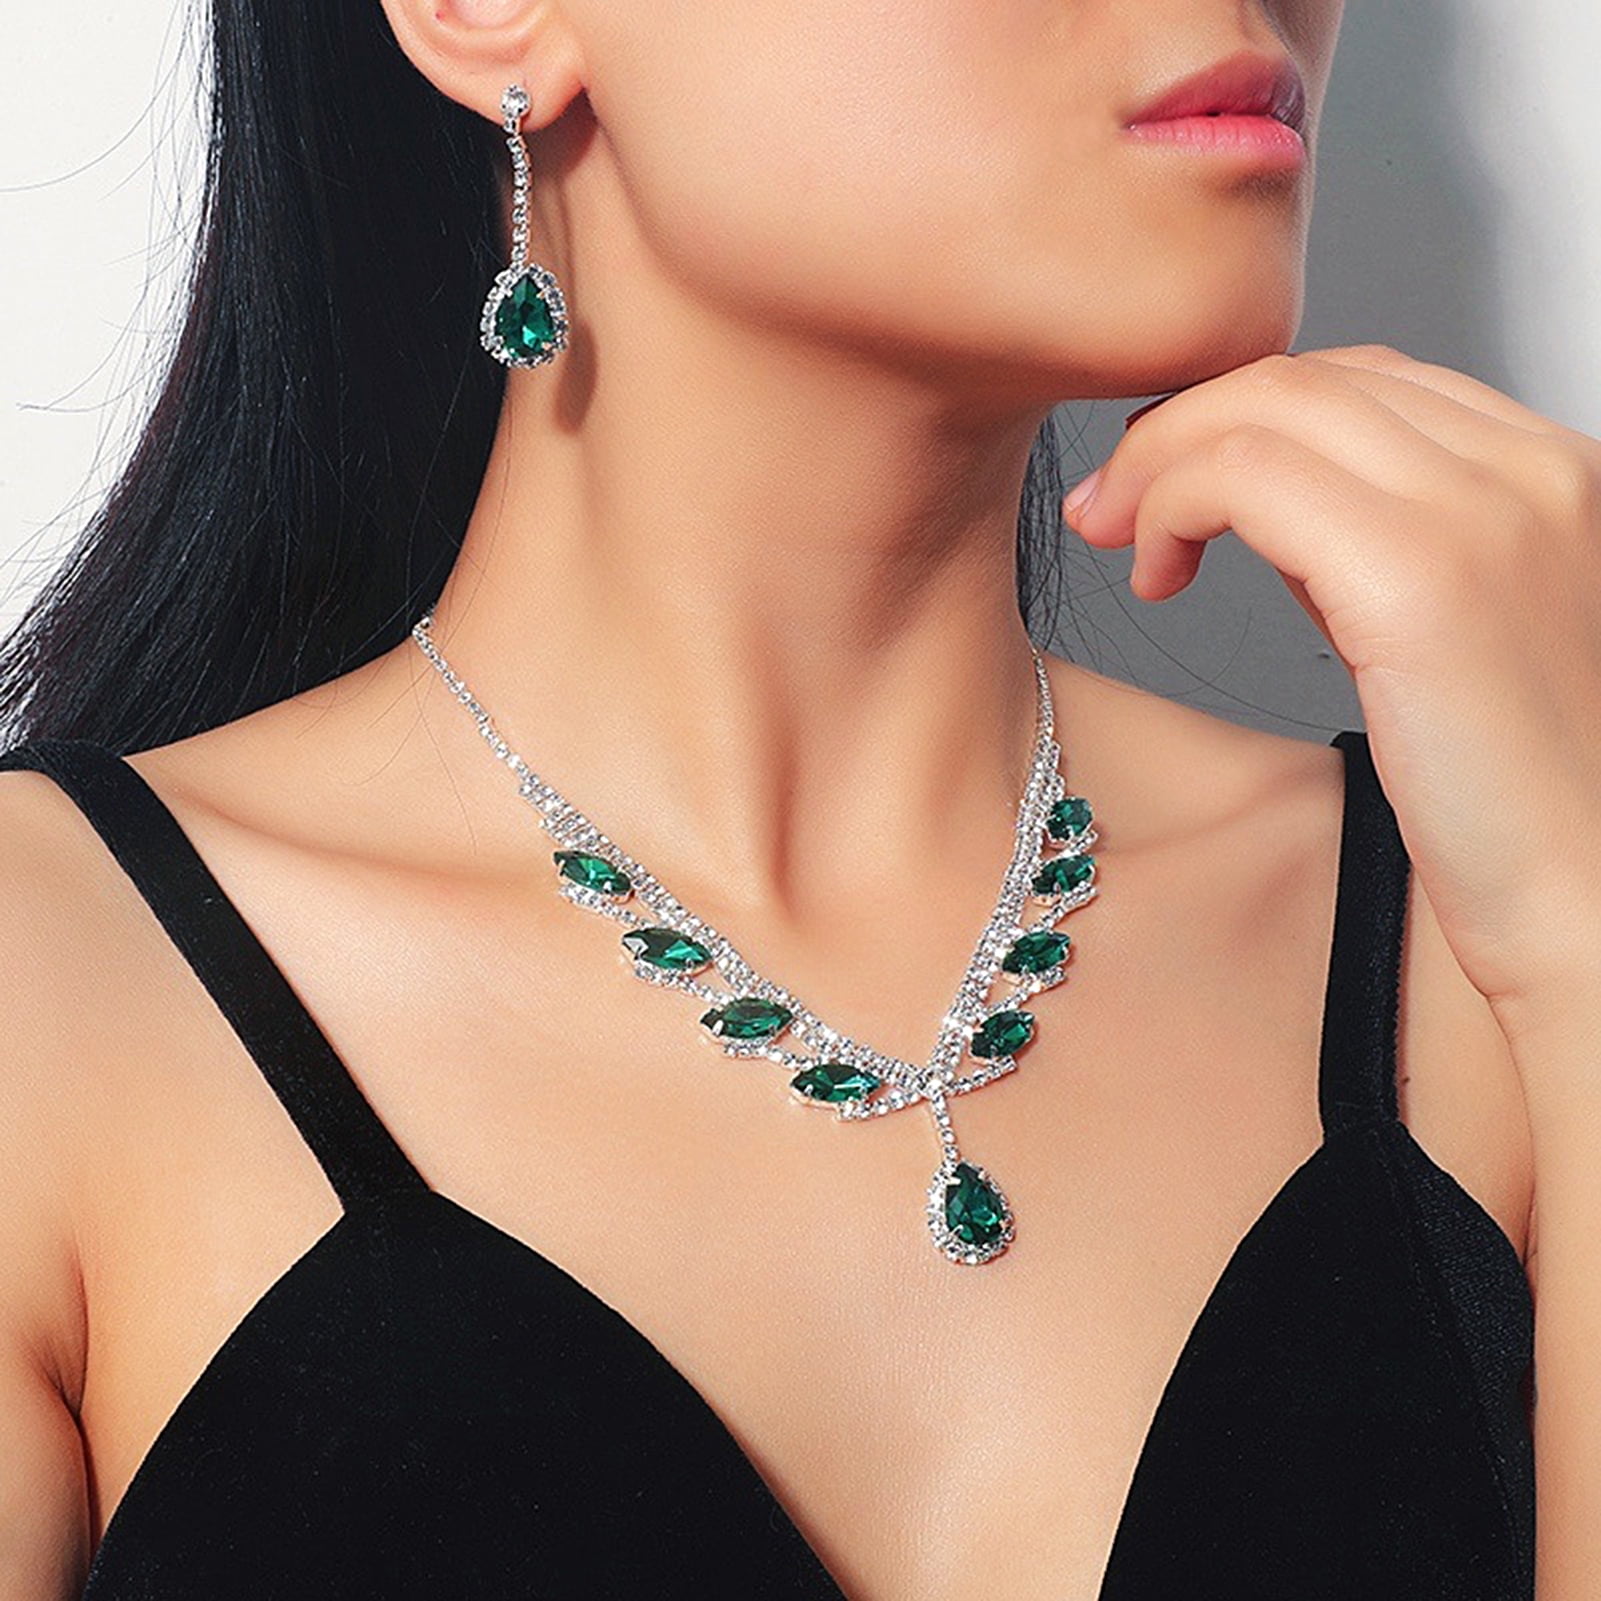 Women's Rhinestone Crystal Cubic Necklace Earrings Jewelry Set